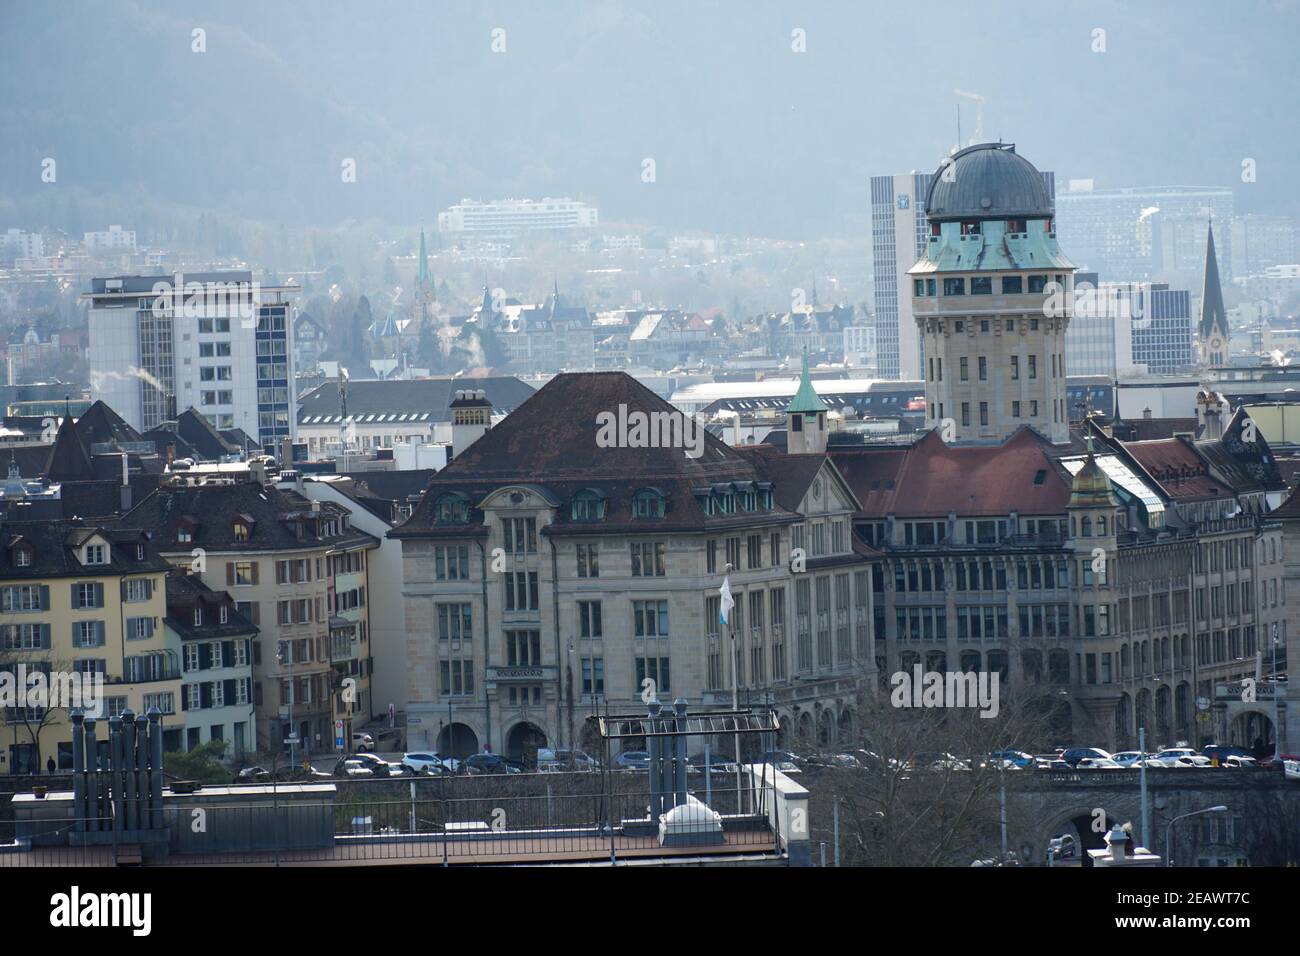 Zurigo, Svizzera - 02 13 2020: Quartiere Lindenhof a Zurigo primo piano con osservatorio pubblico Urania con cupola telescopica sulla destra. Foto Stock